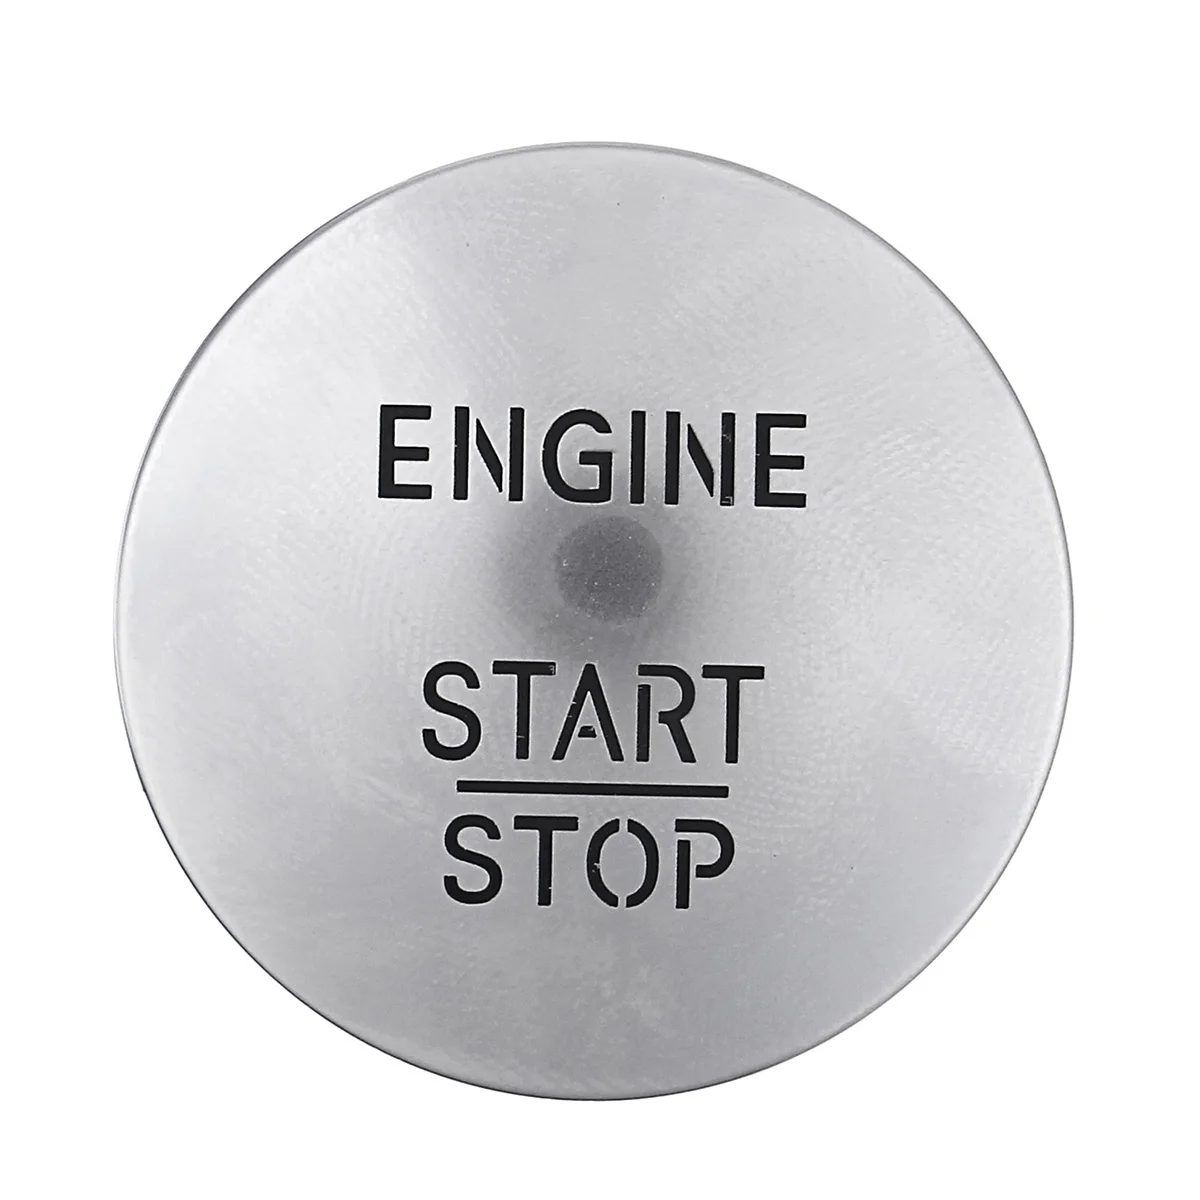 Автомобильный двигатель старт стоп кнопочный переключатель без ключа для Mercedes все для Benz модель W164 W205 W212 W213 W164 W221 X204 серебро/красный